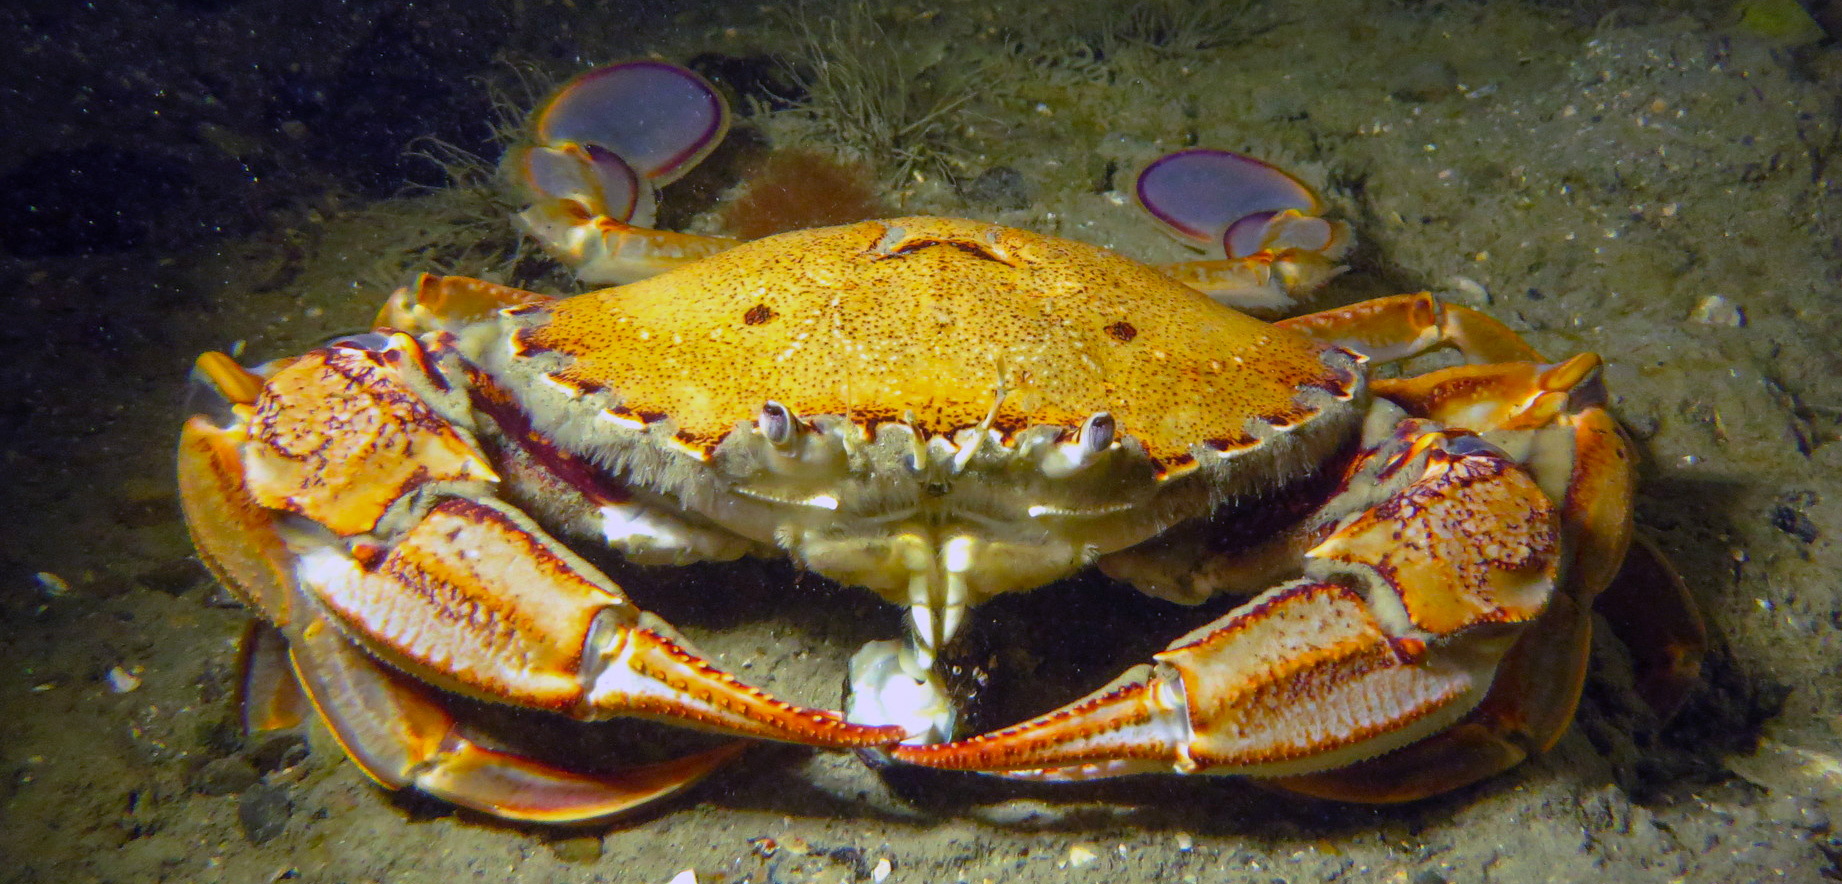 Paddle crab underwater